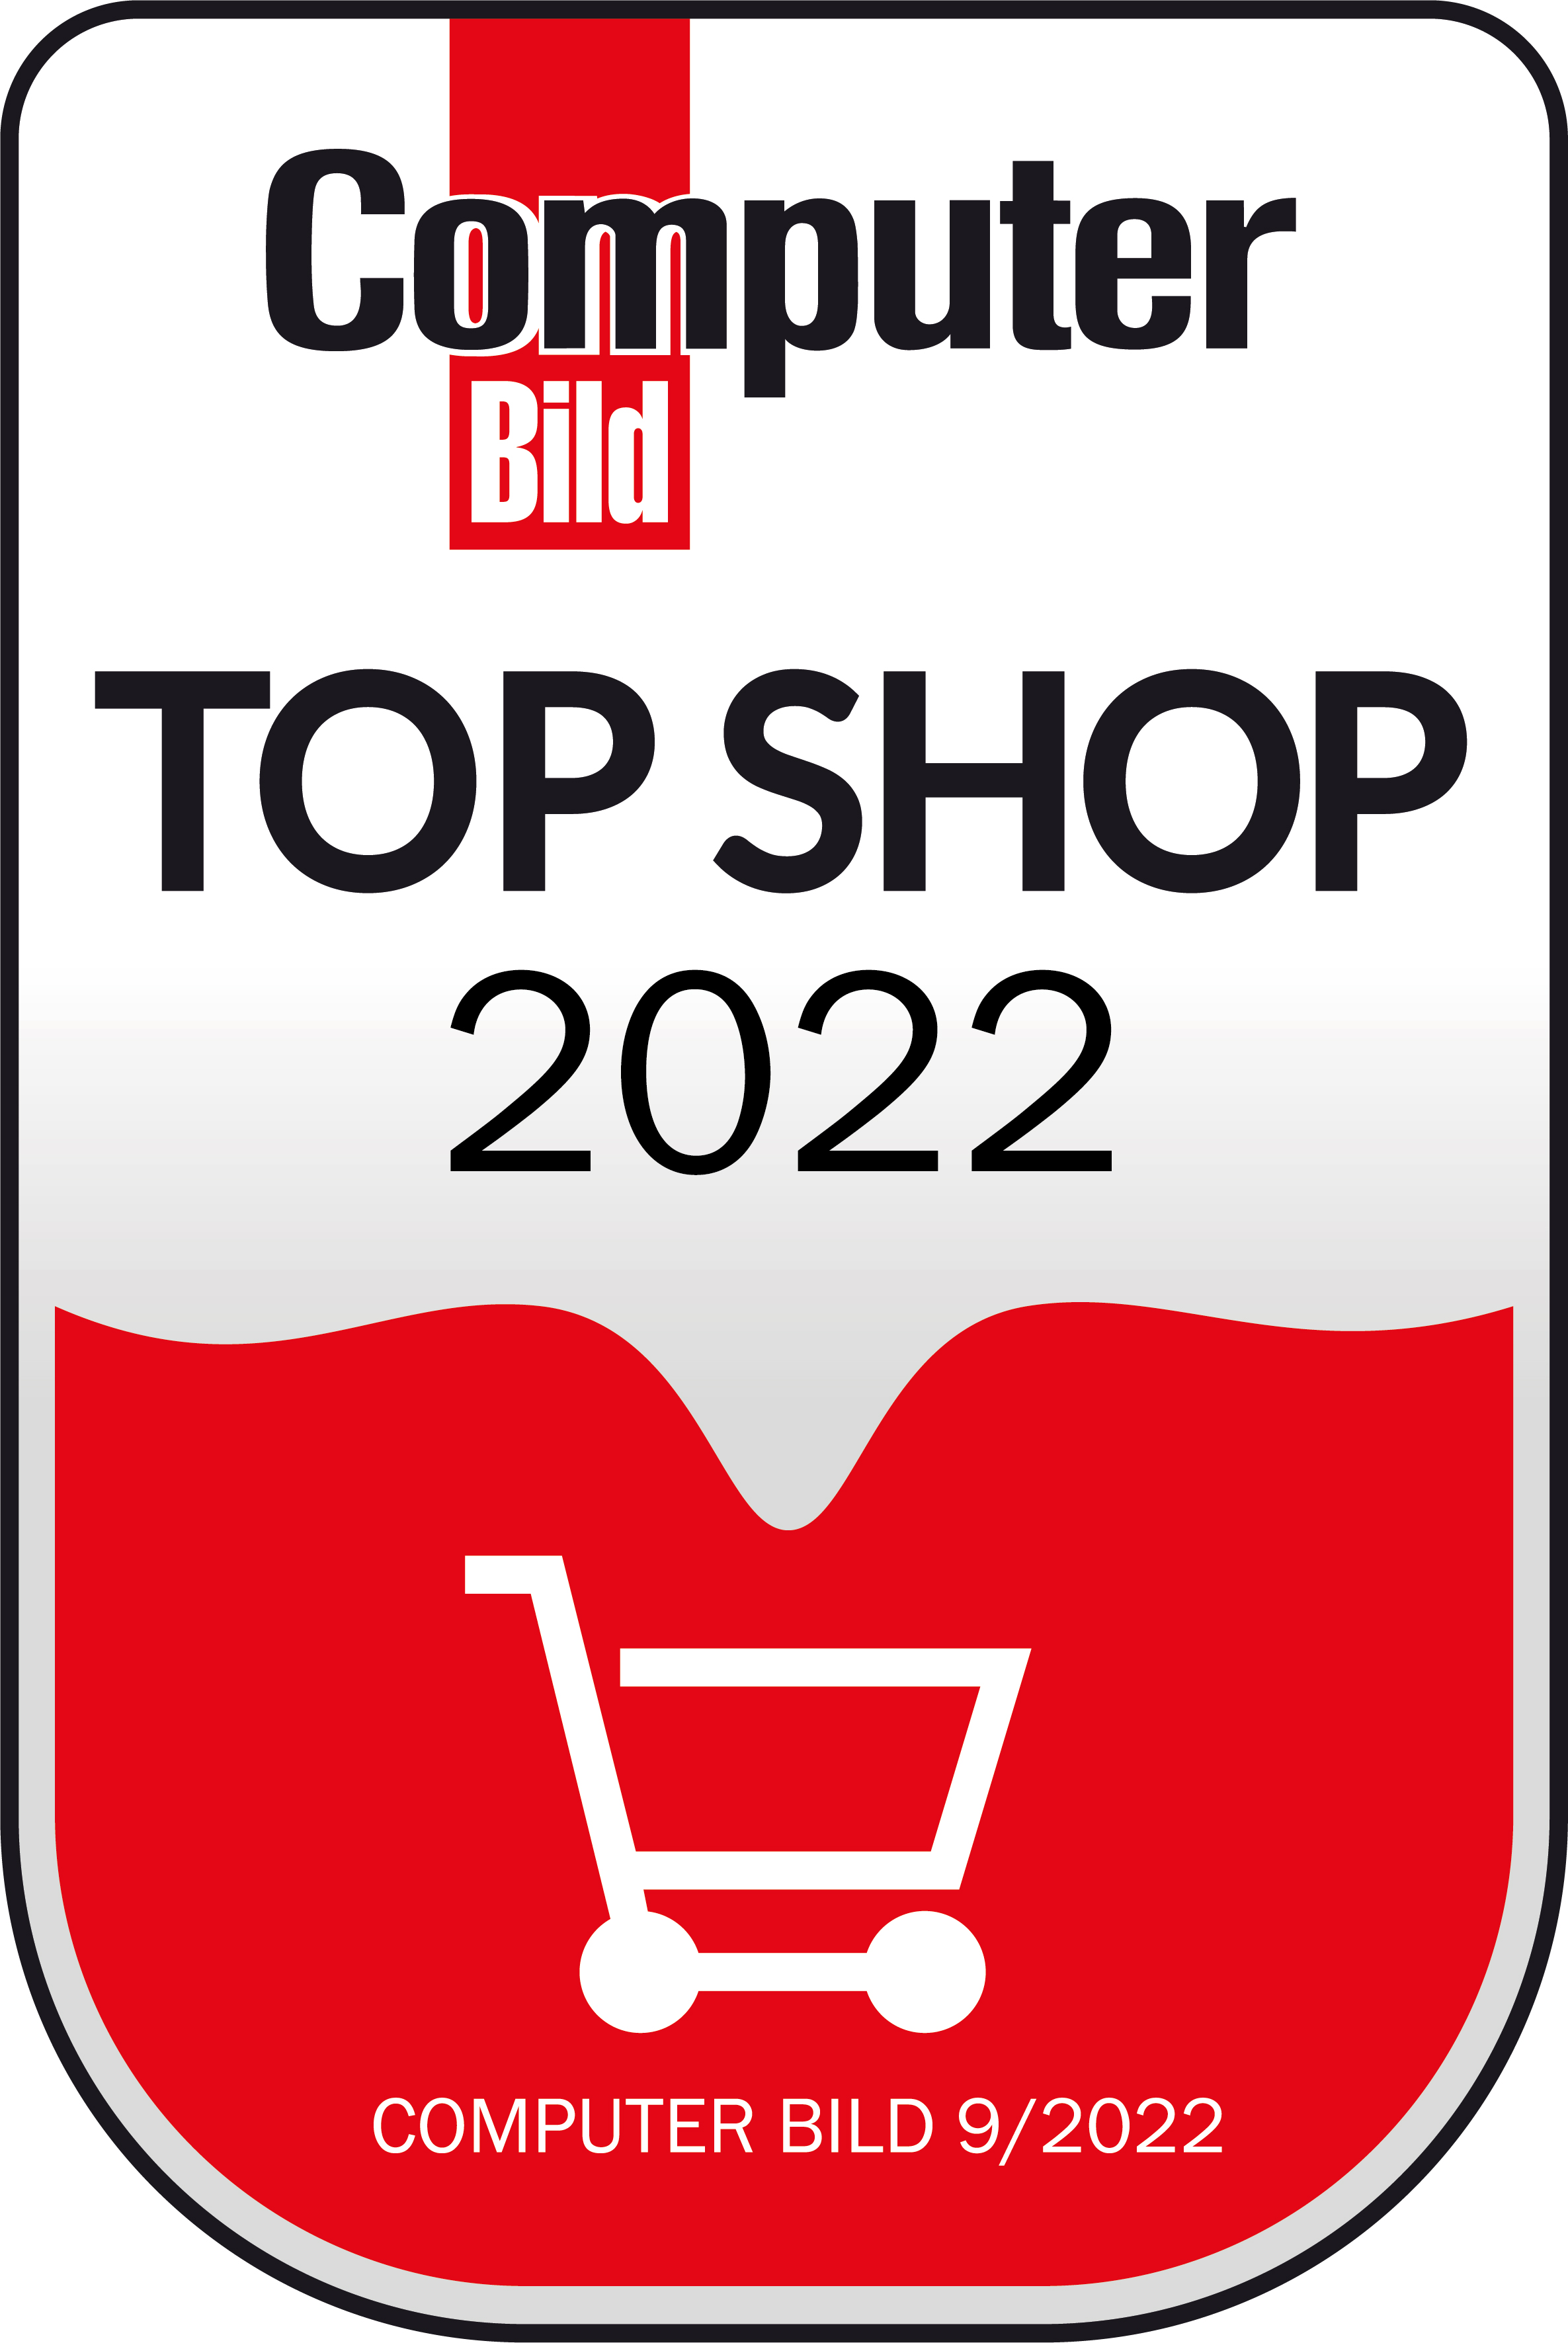 TOP SHOP 2022